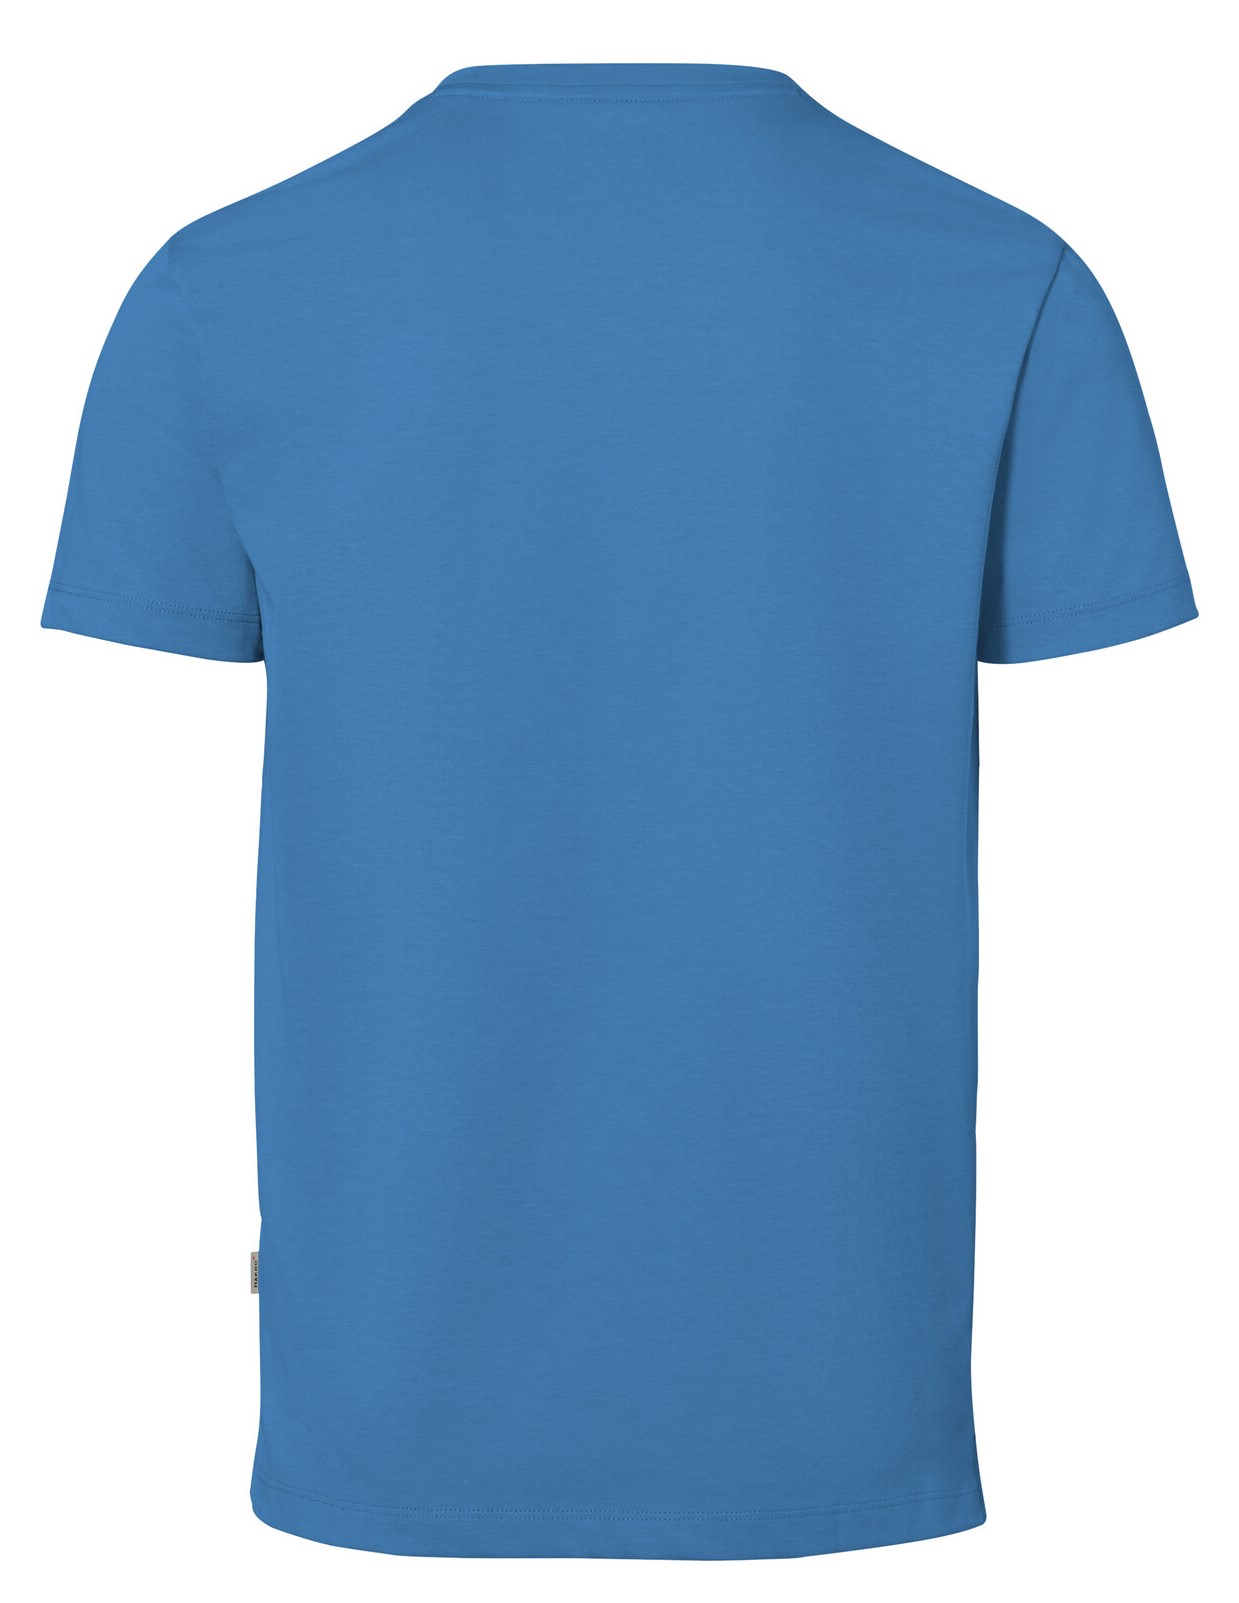 HAKRO T-Shirt 269 Cotton-Tec